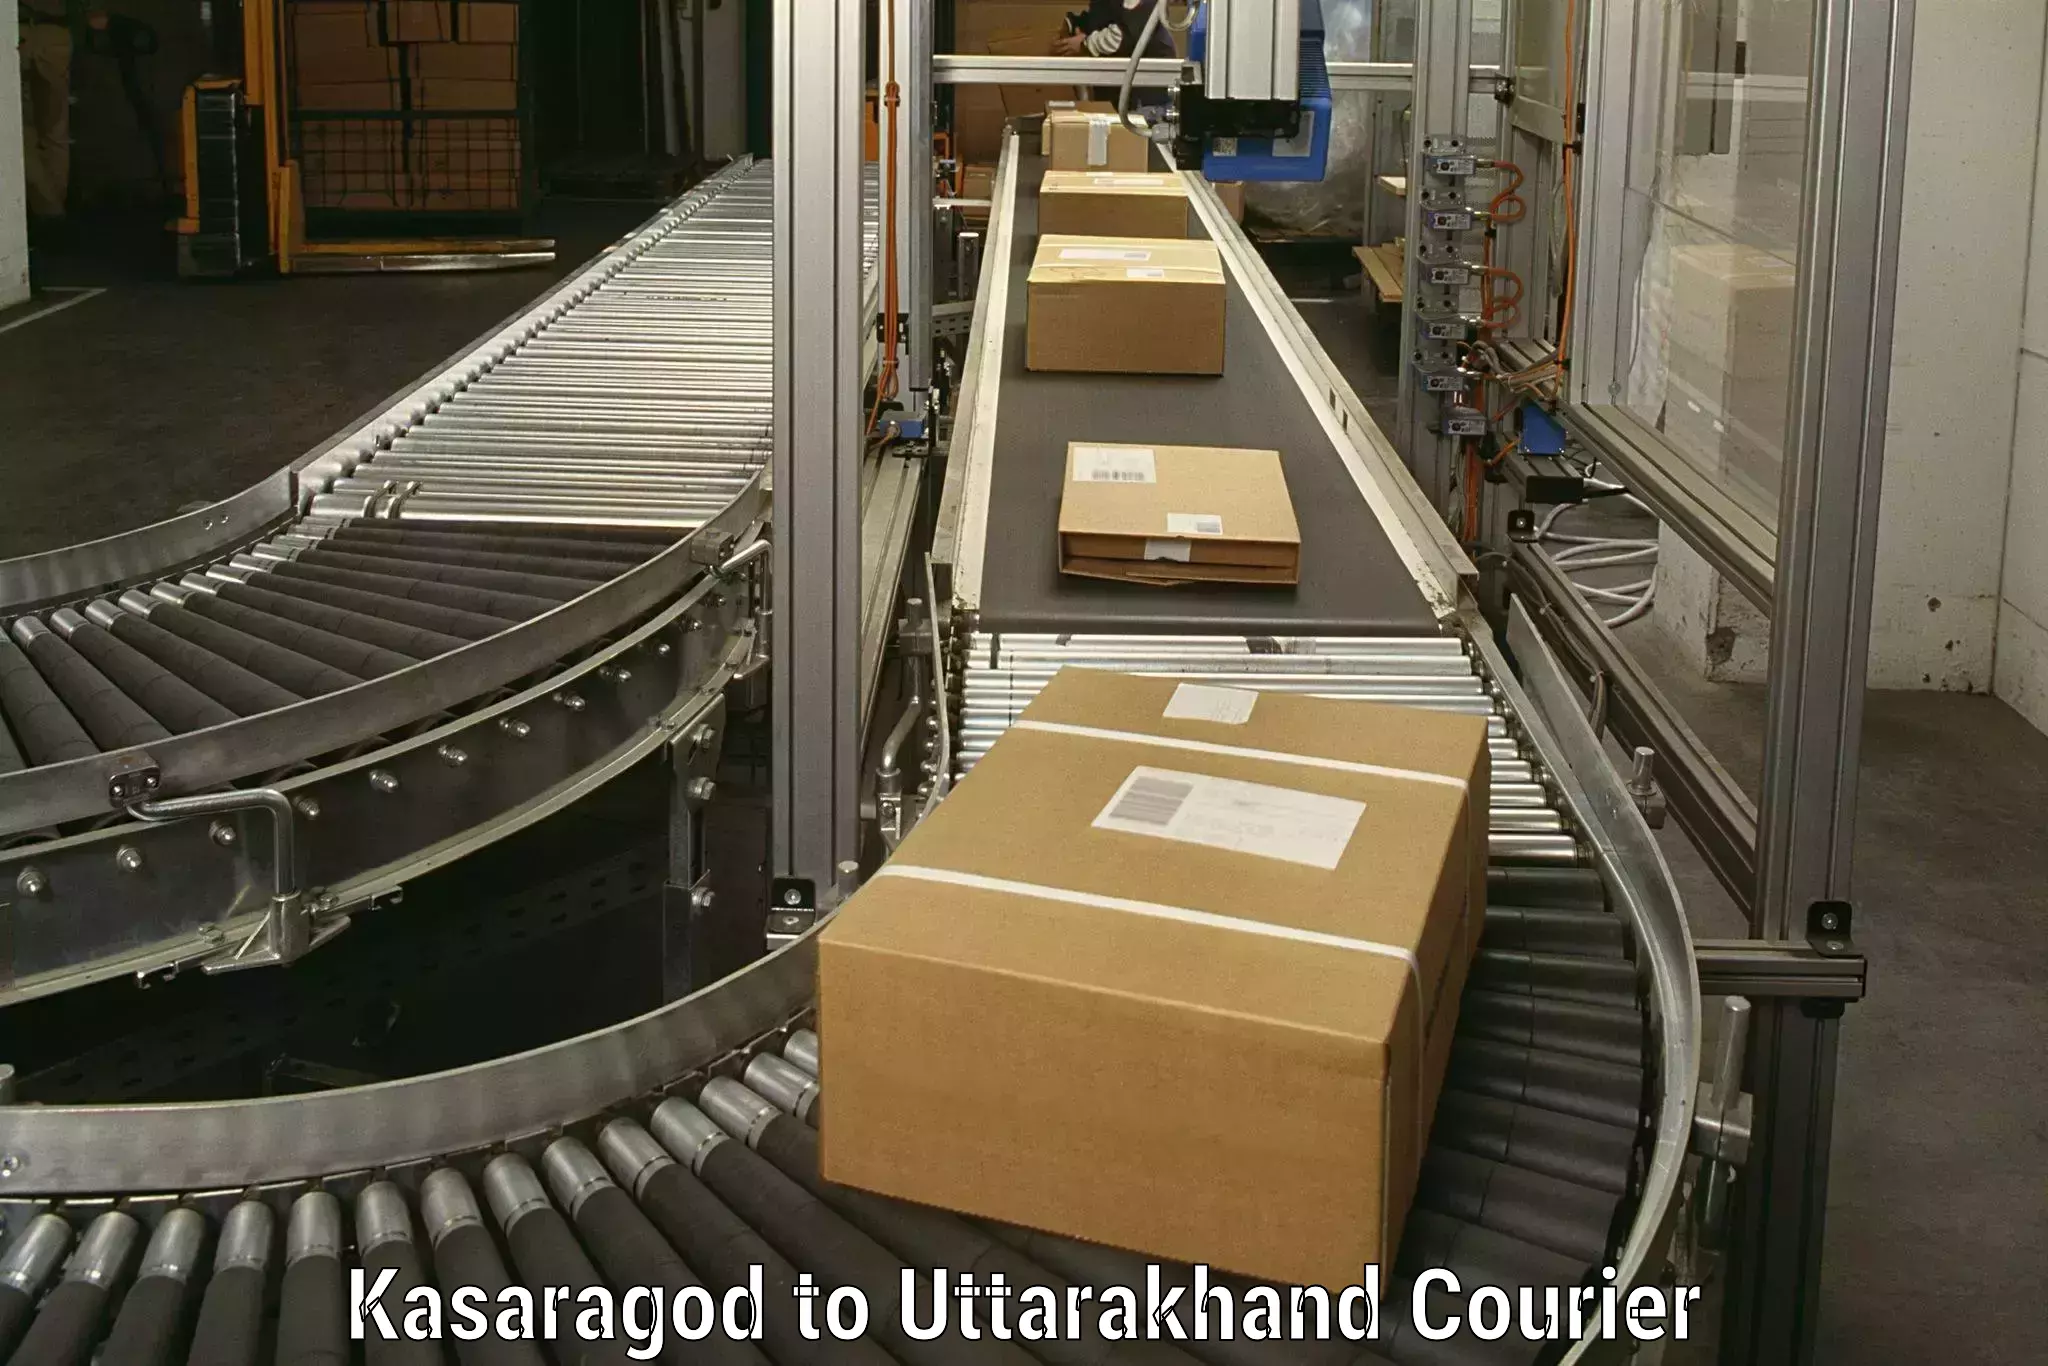 Trusted moving company Kasaragod to Uttarakhand